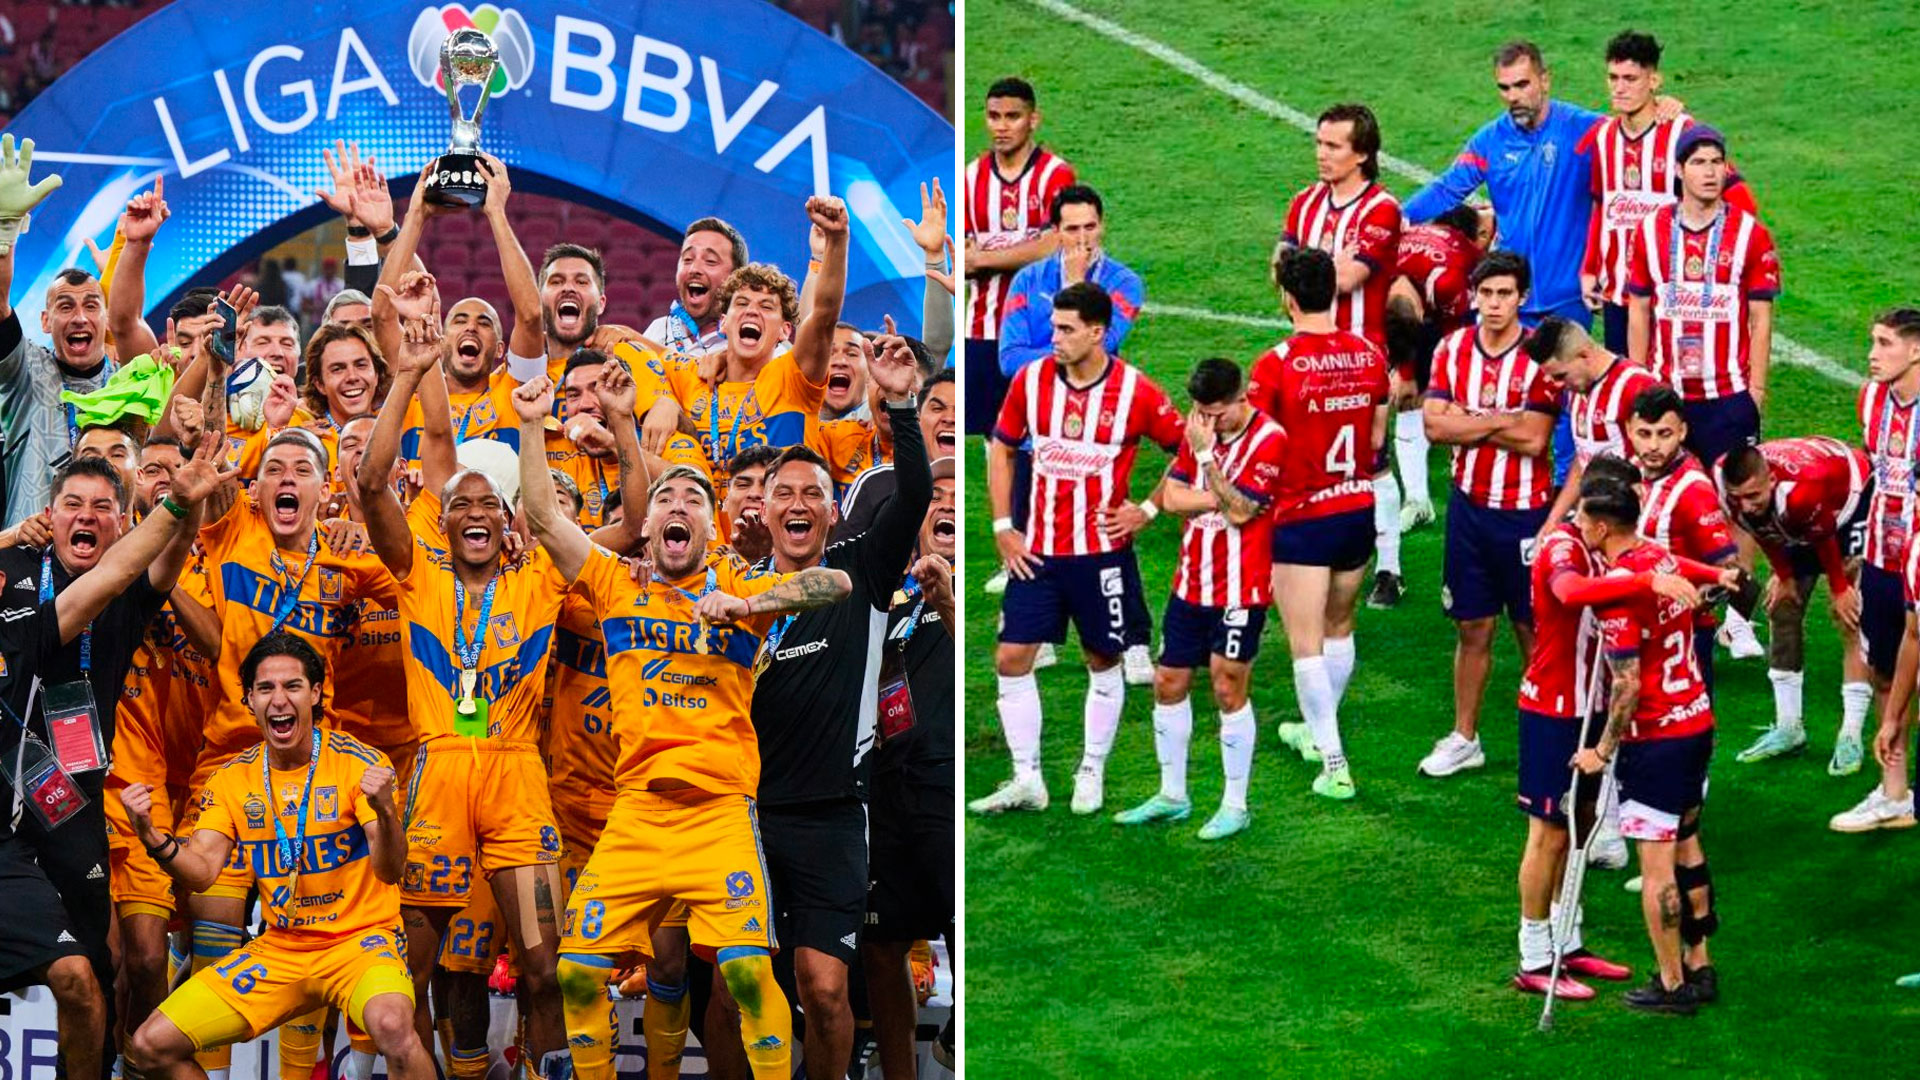 Mientras Tigres festeja el título, las Chivas reconocen la derrota y aplauden al rival

Foto: Jovani Pérez